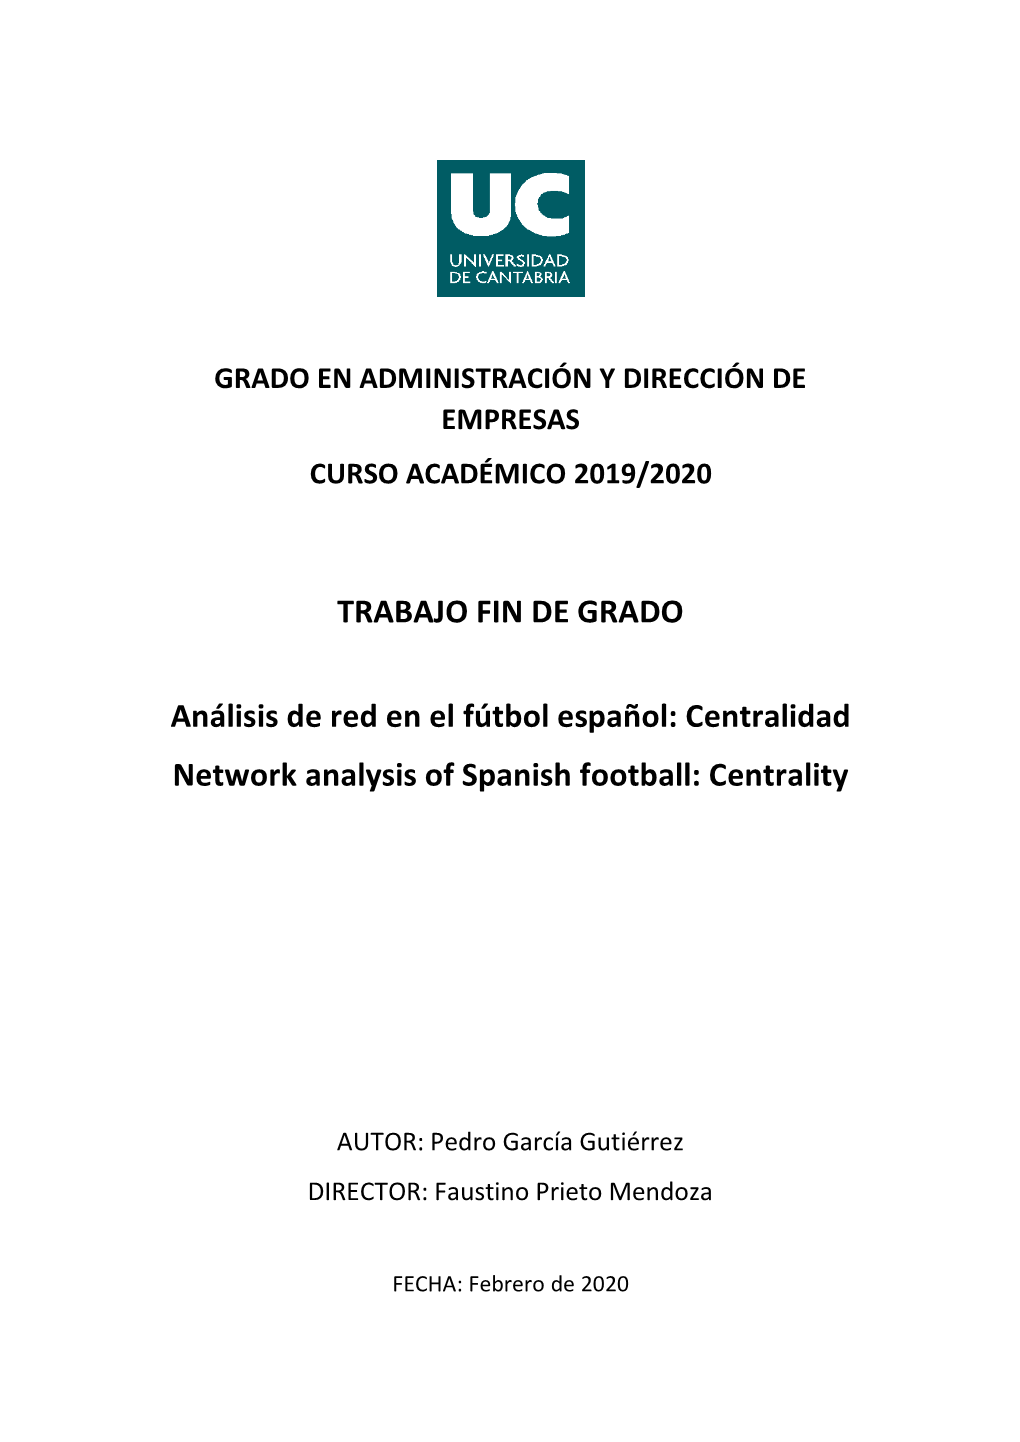 TRABAJO FIN DE GRADO Análisis De Red En El Fútbol Español: Centralidad Network Analysis of Spanish Football: Centrality